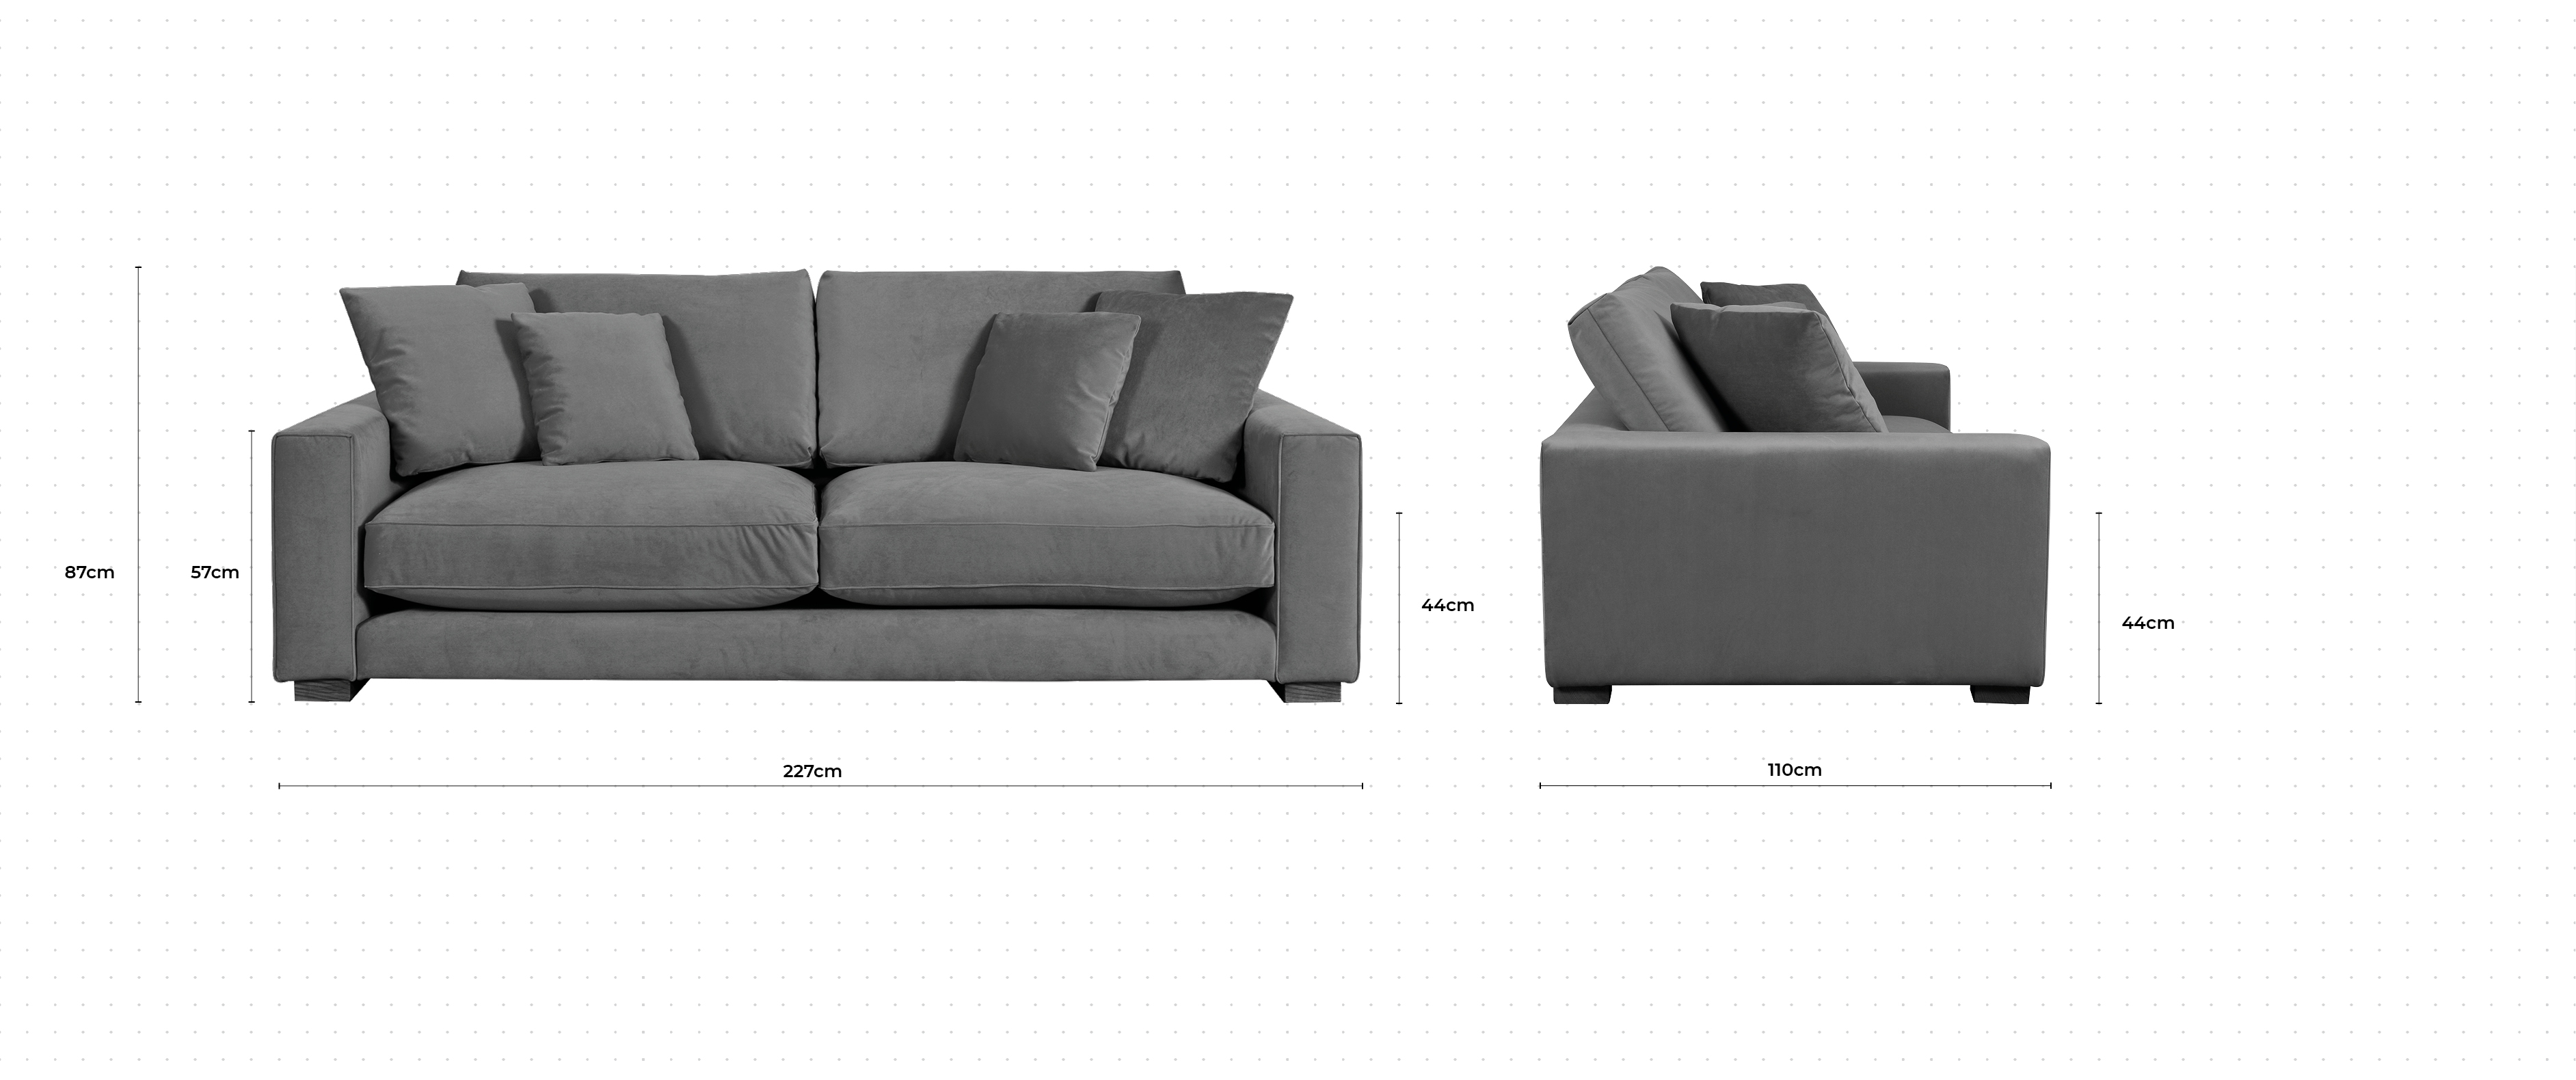 Dillon 3 Seater Sofa dimensions